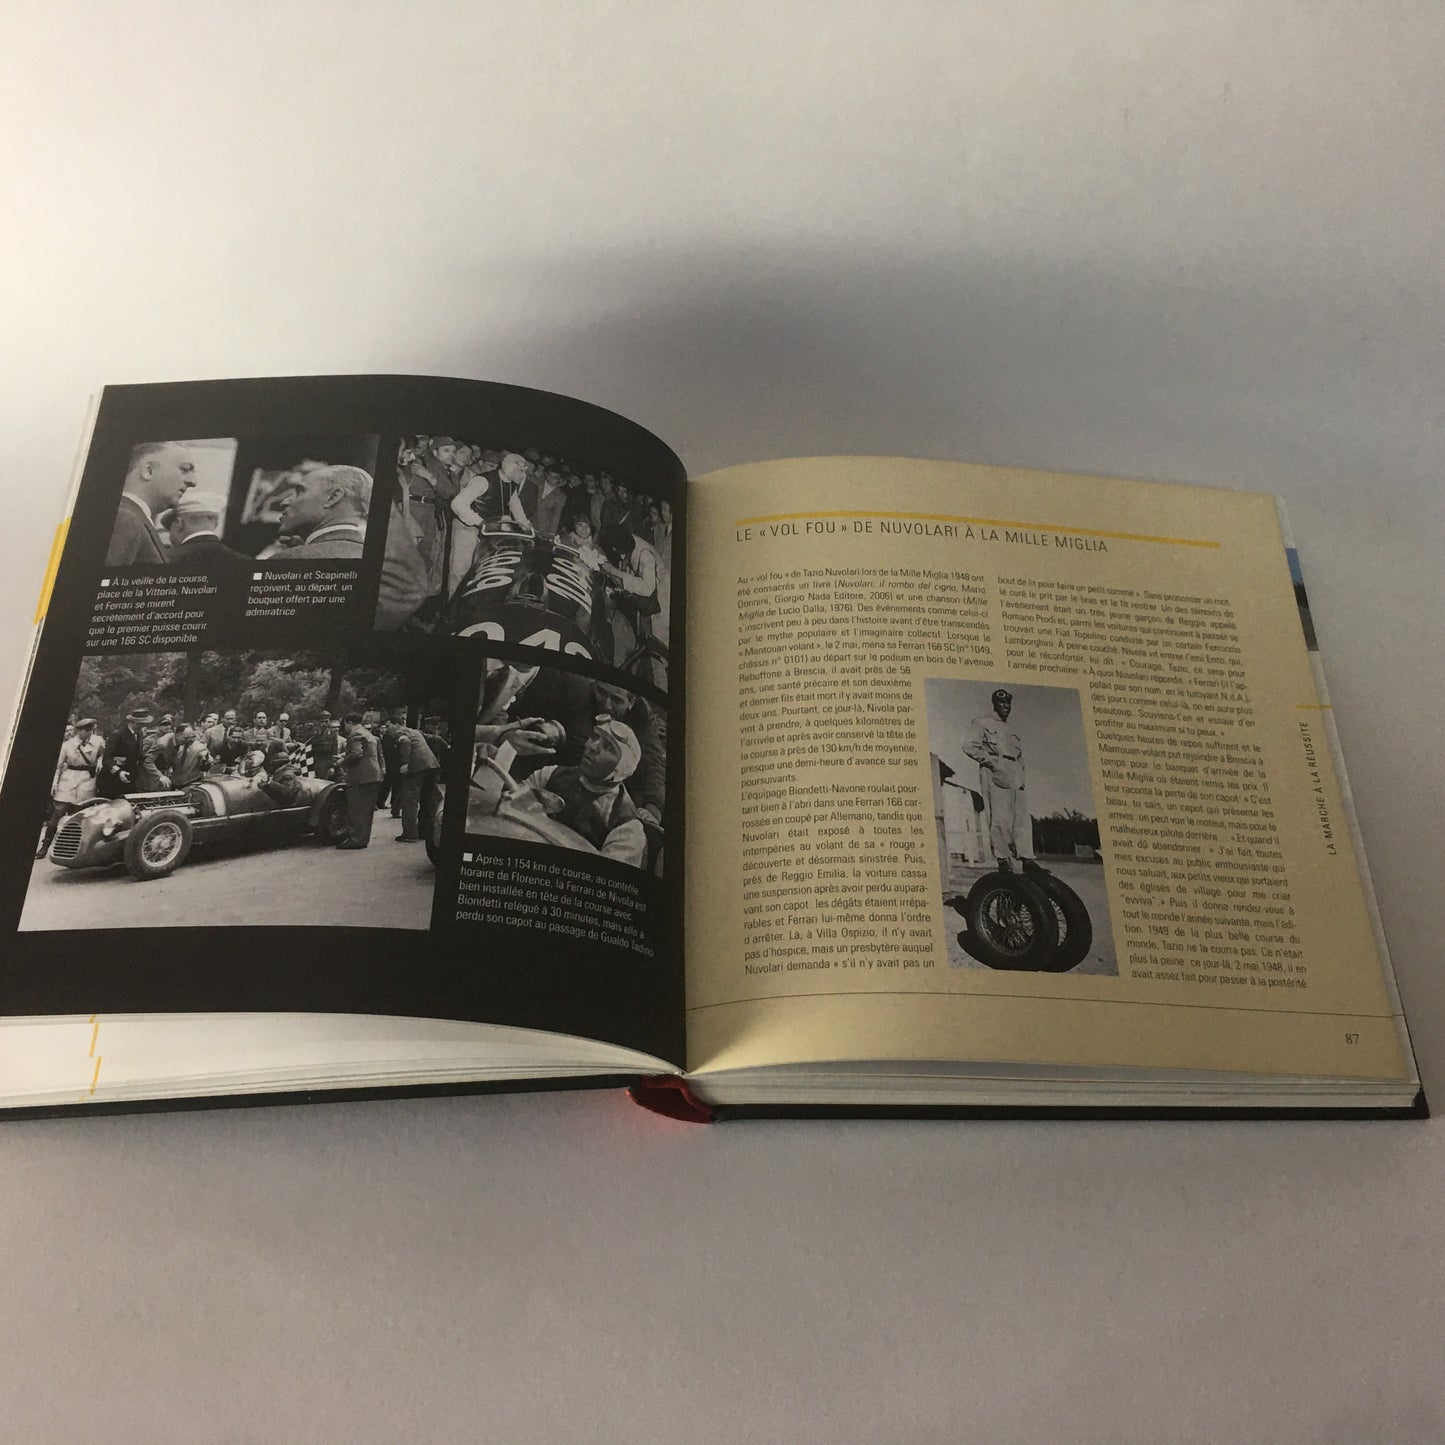 Ferrari, Book Ferrari Entre Réalité et Légende, Edizioni Grun, ISBN 9782700017588